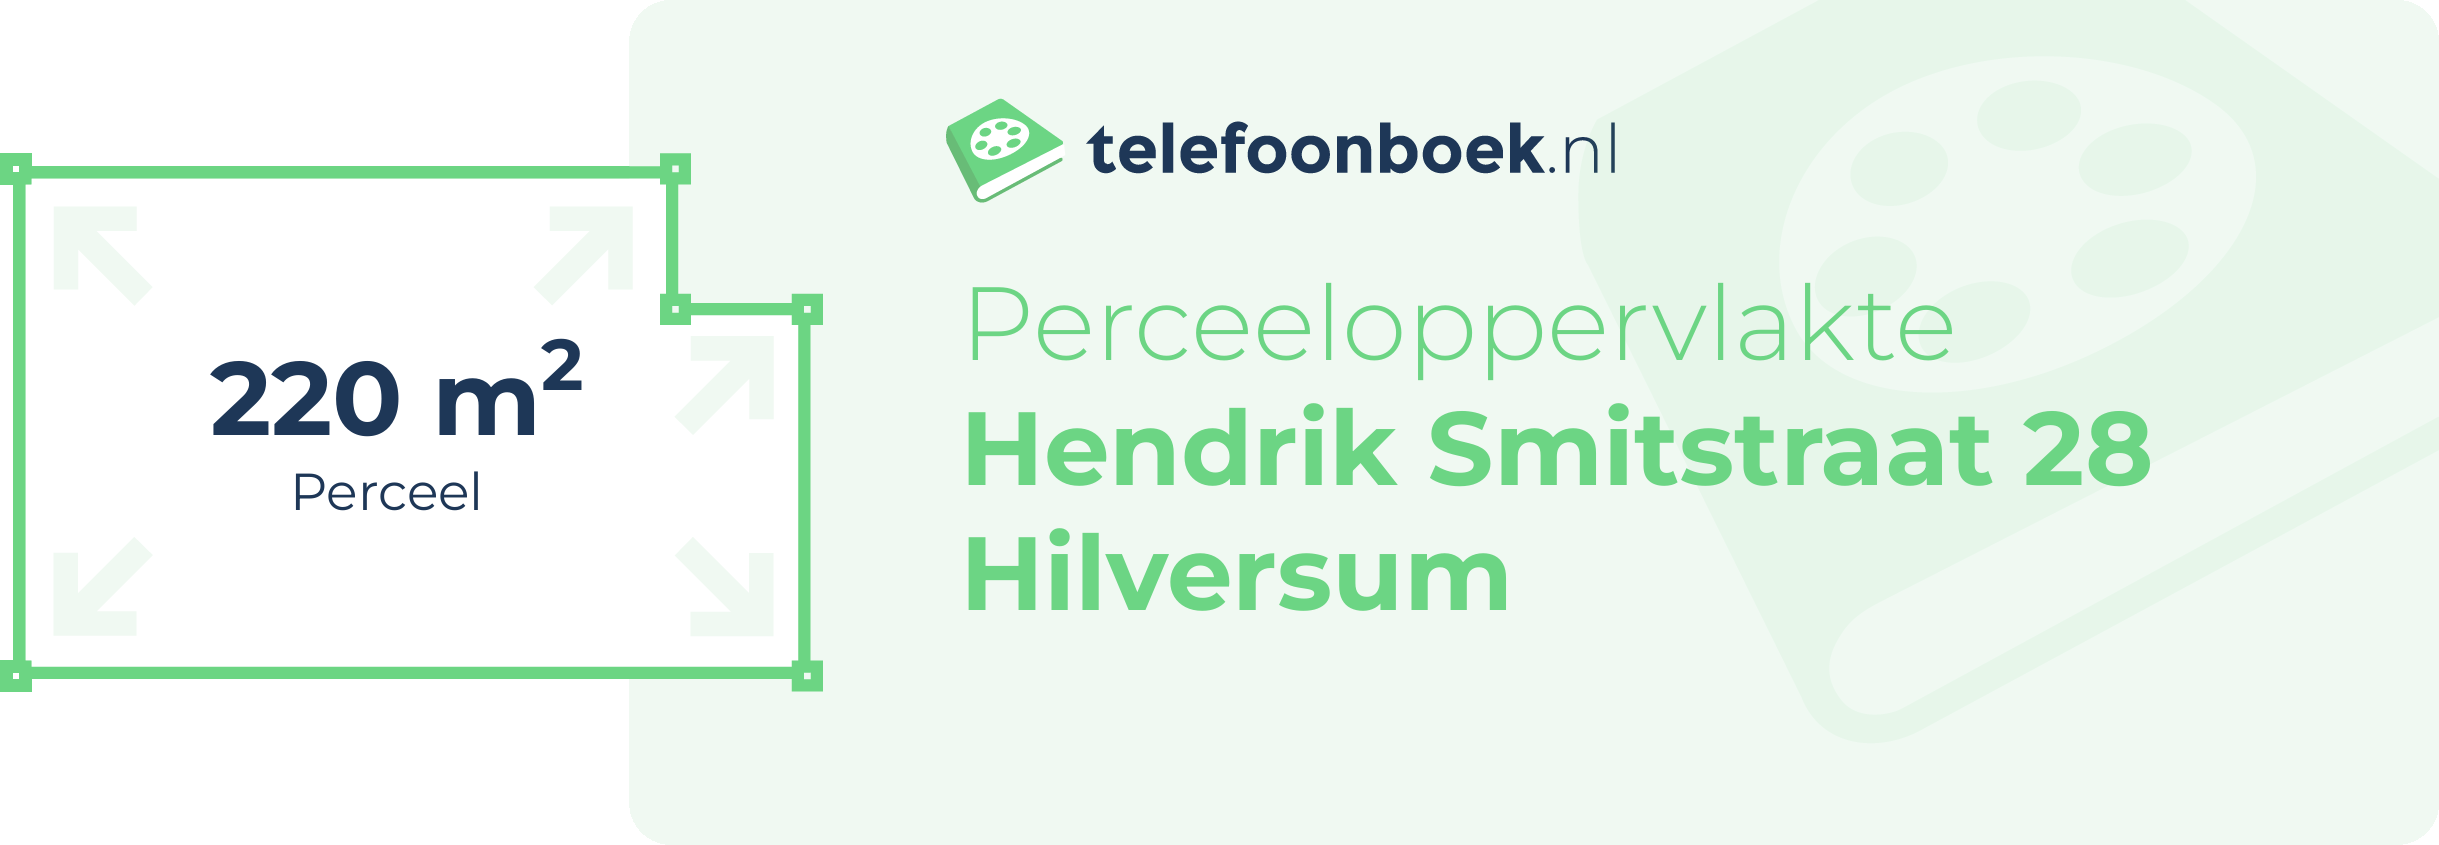 Perceeloppervlakte Hendrik Smitstraat 28 Hilversum